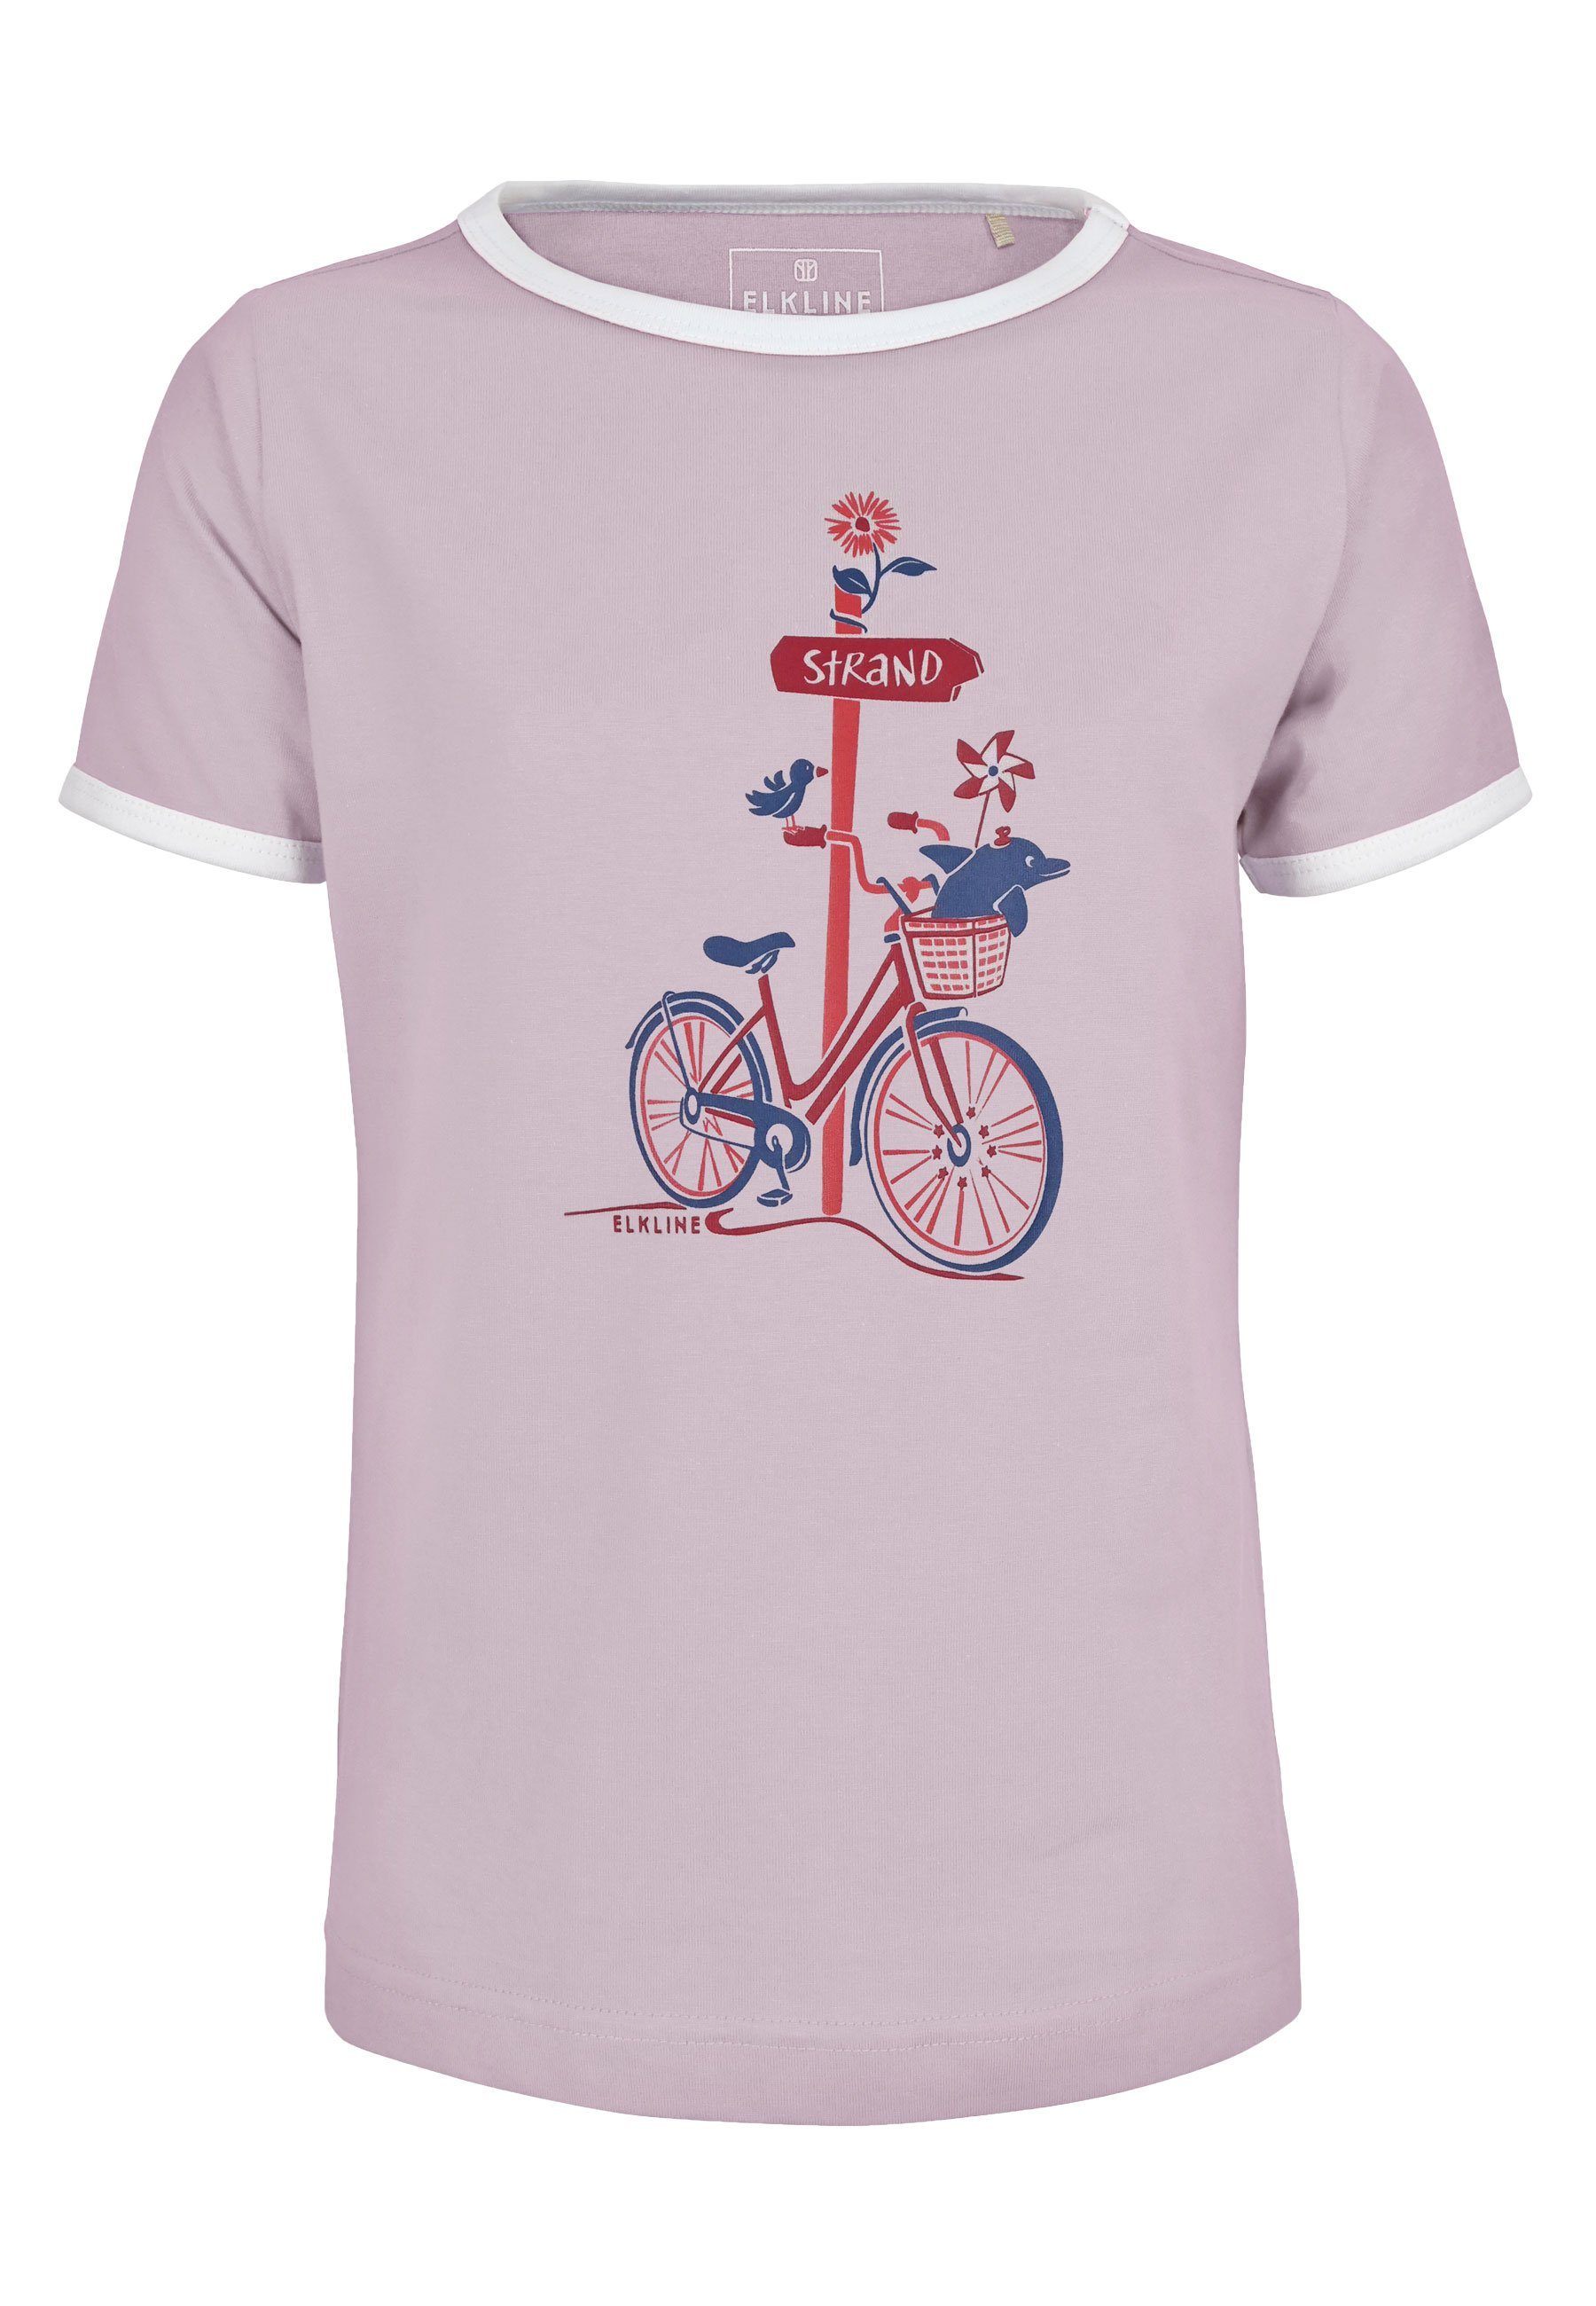 leicht Elkline Strand T-Shirt lavender tailliert Zum Print Brust Fahrrad